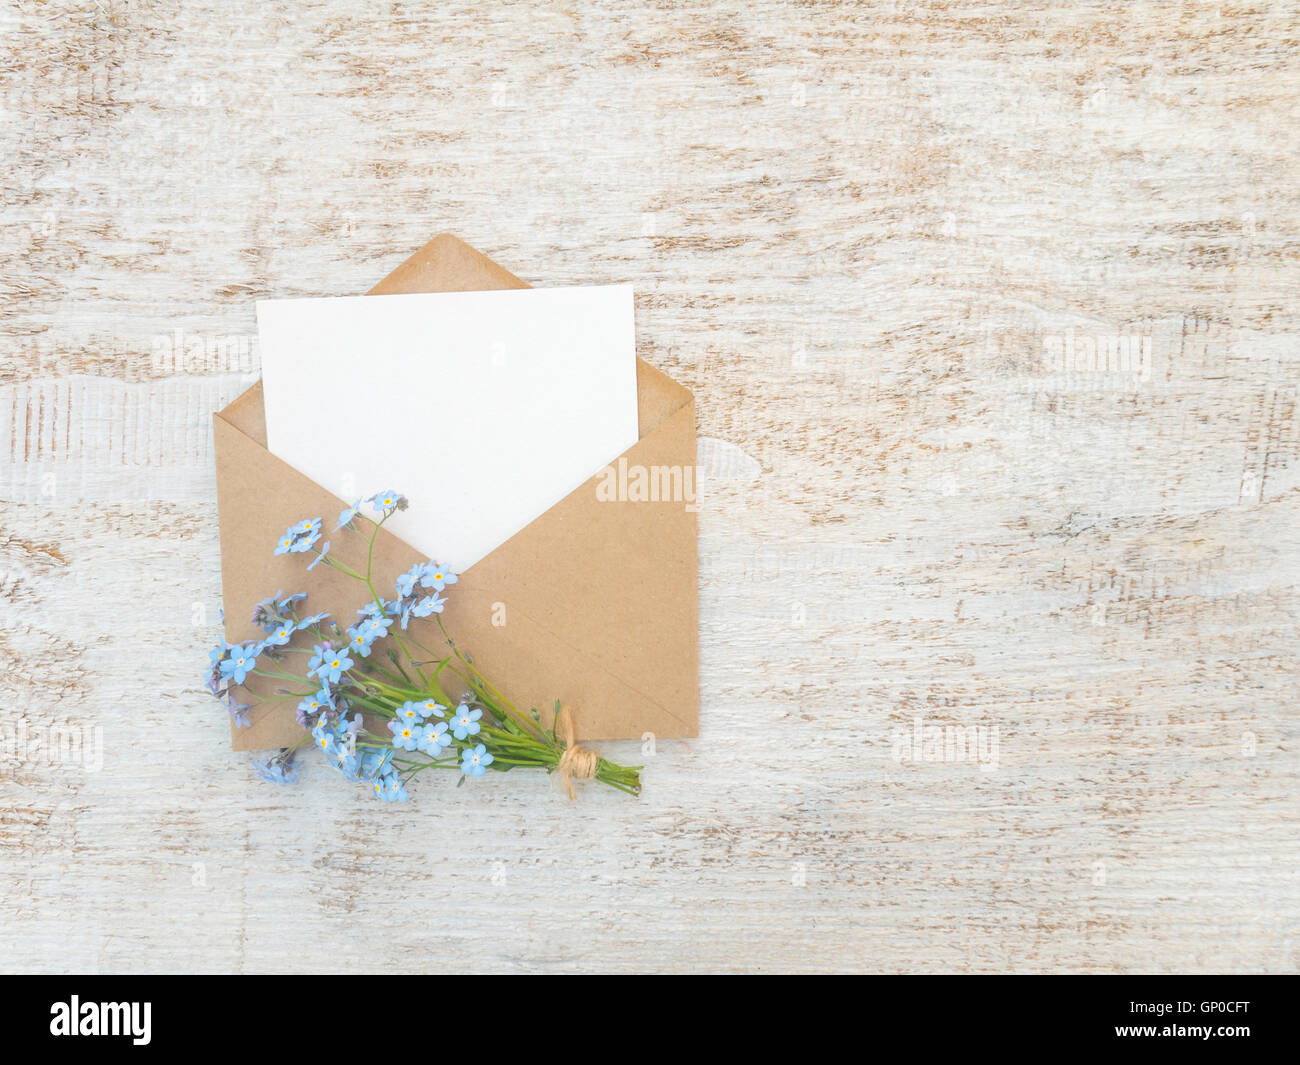 Enveloppe de papier brun avec blanc et bleu carte vierge forget-me-not fleurs bouquet attaché avec de la corde de jute sur la peinture blanche rustique Banque D'Images